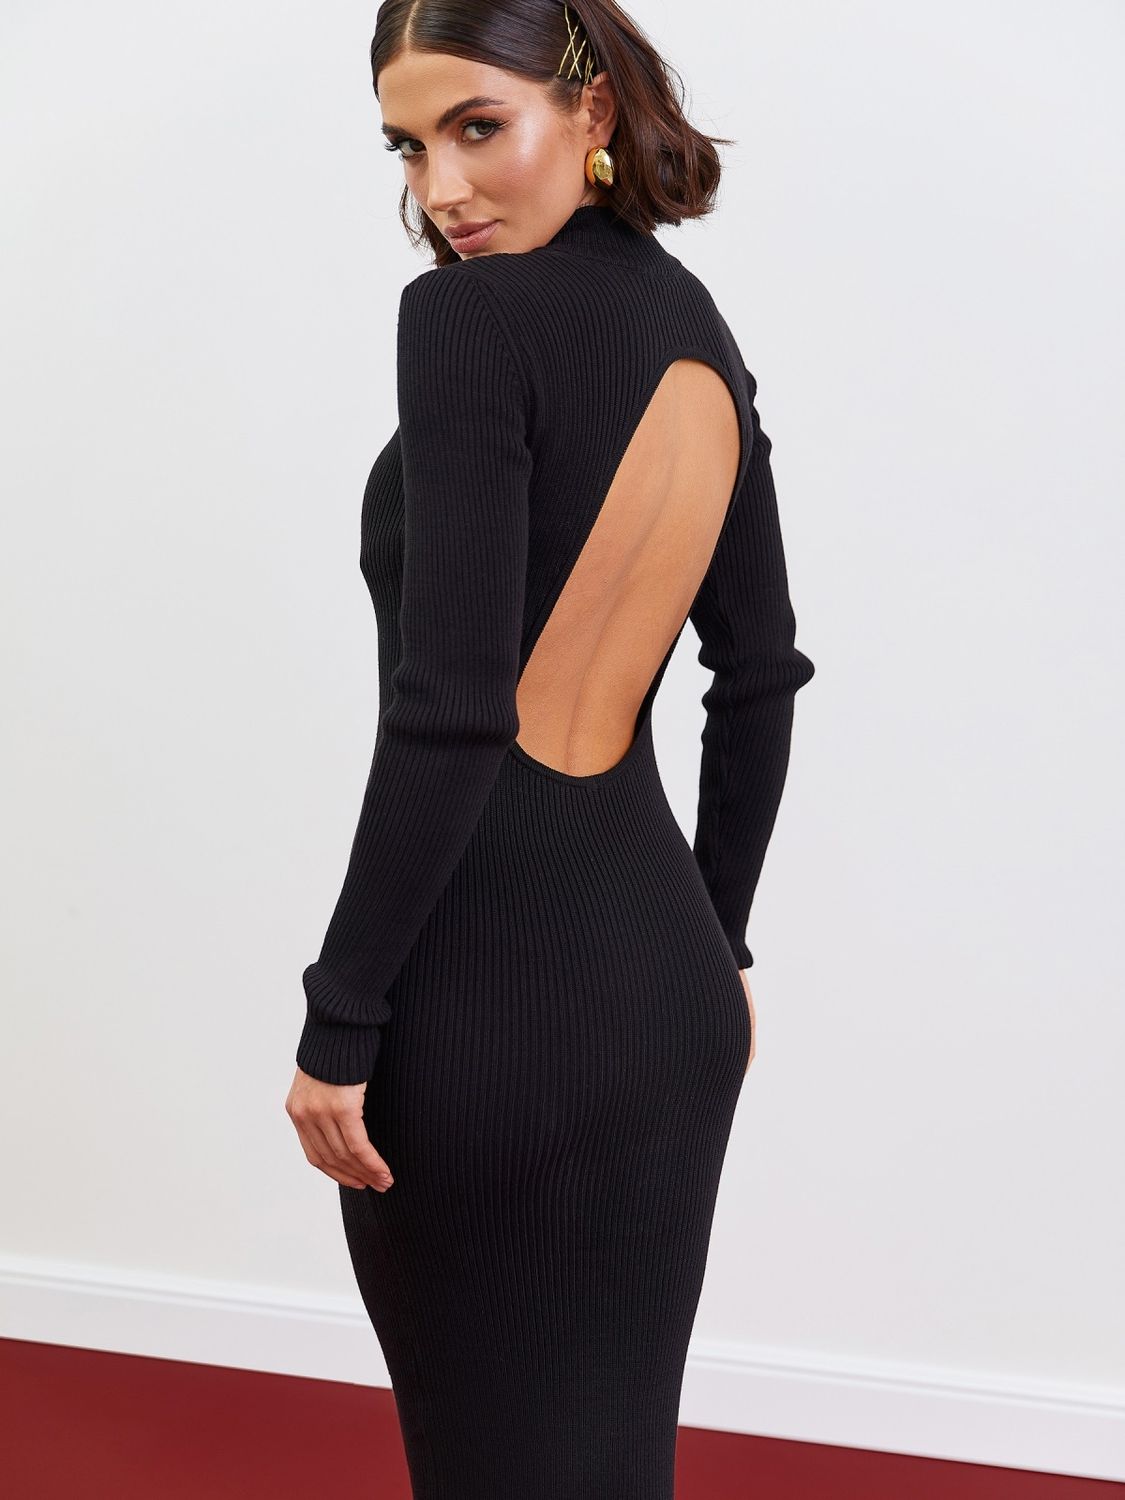 Черное облегающее платье с открытой спиной - фото